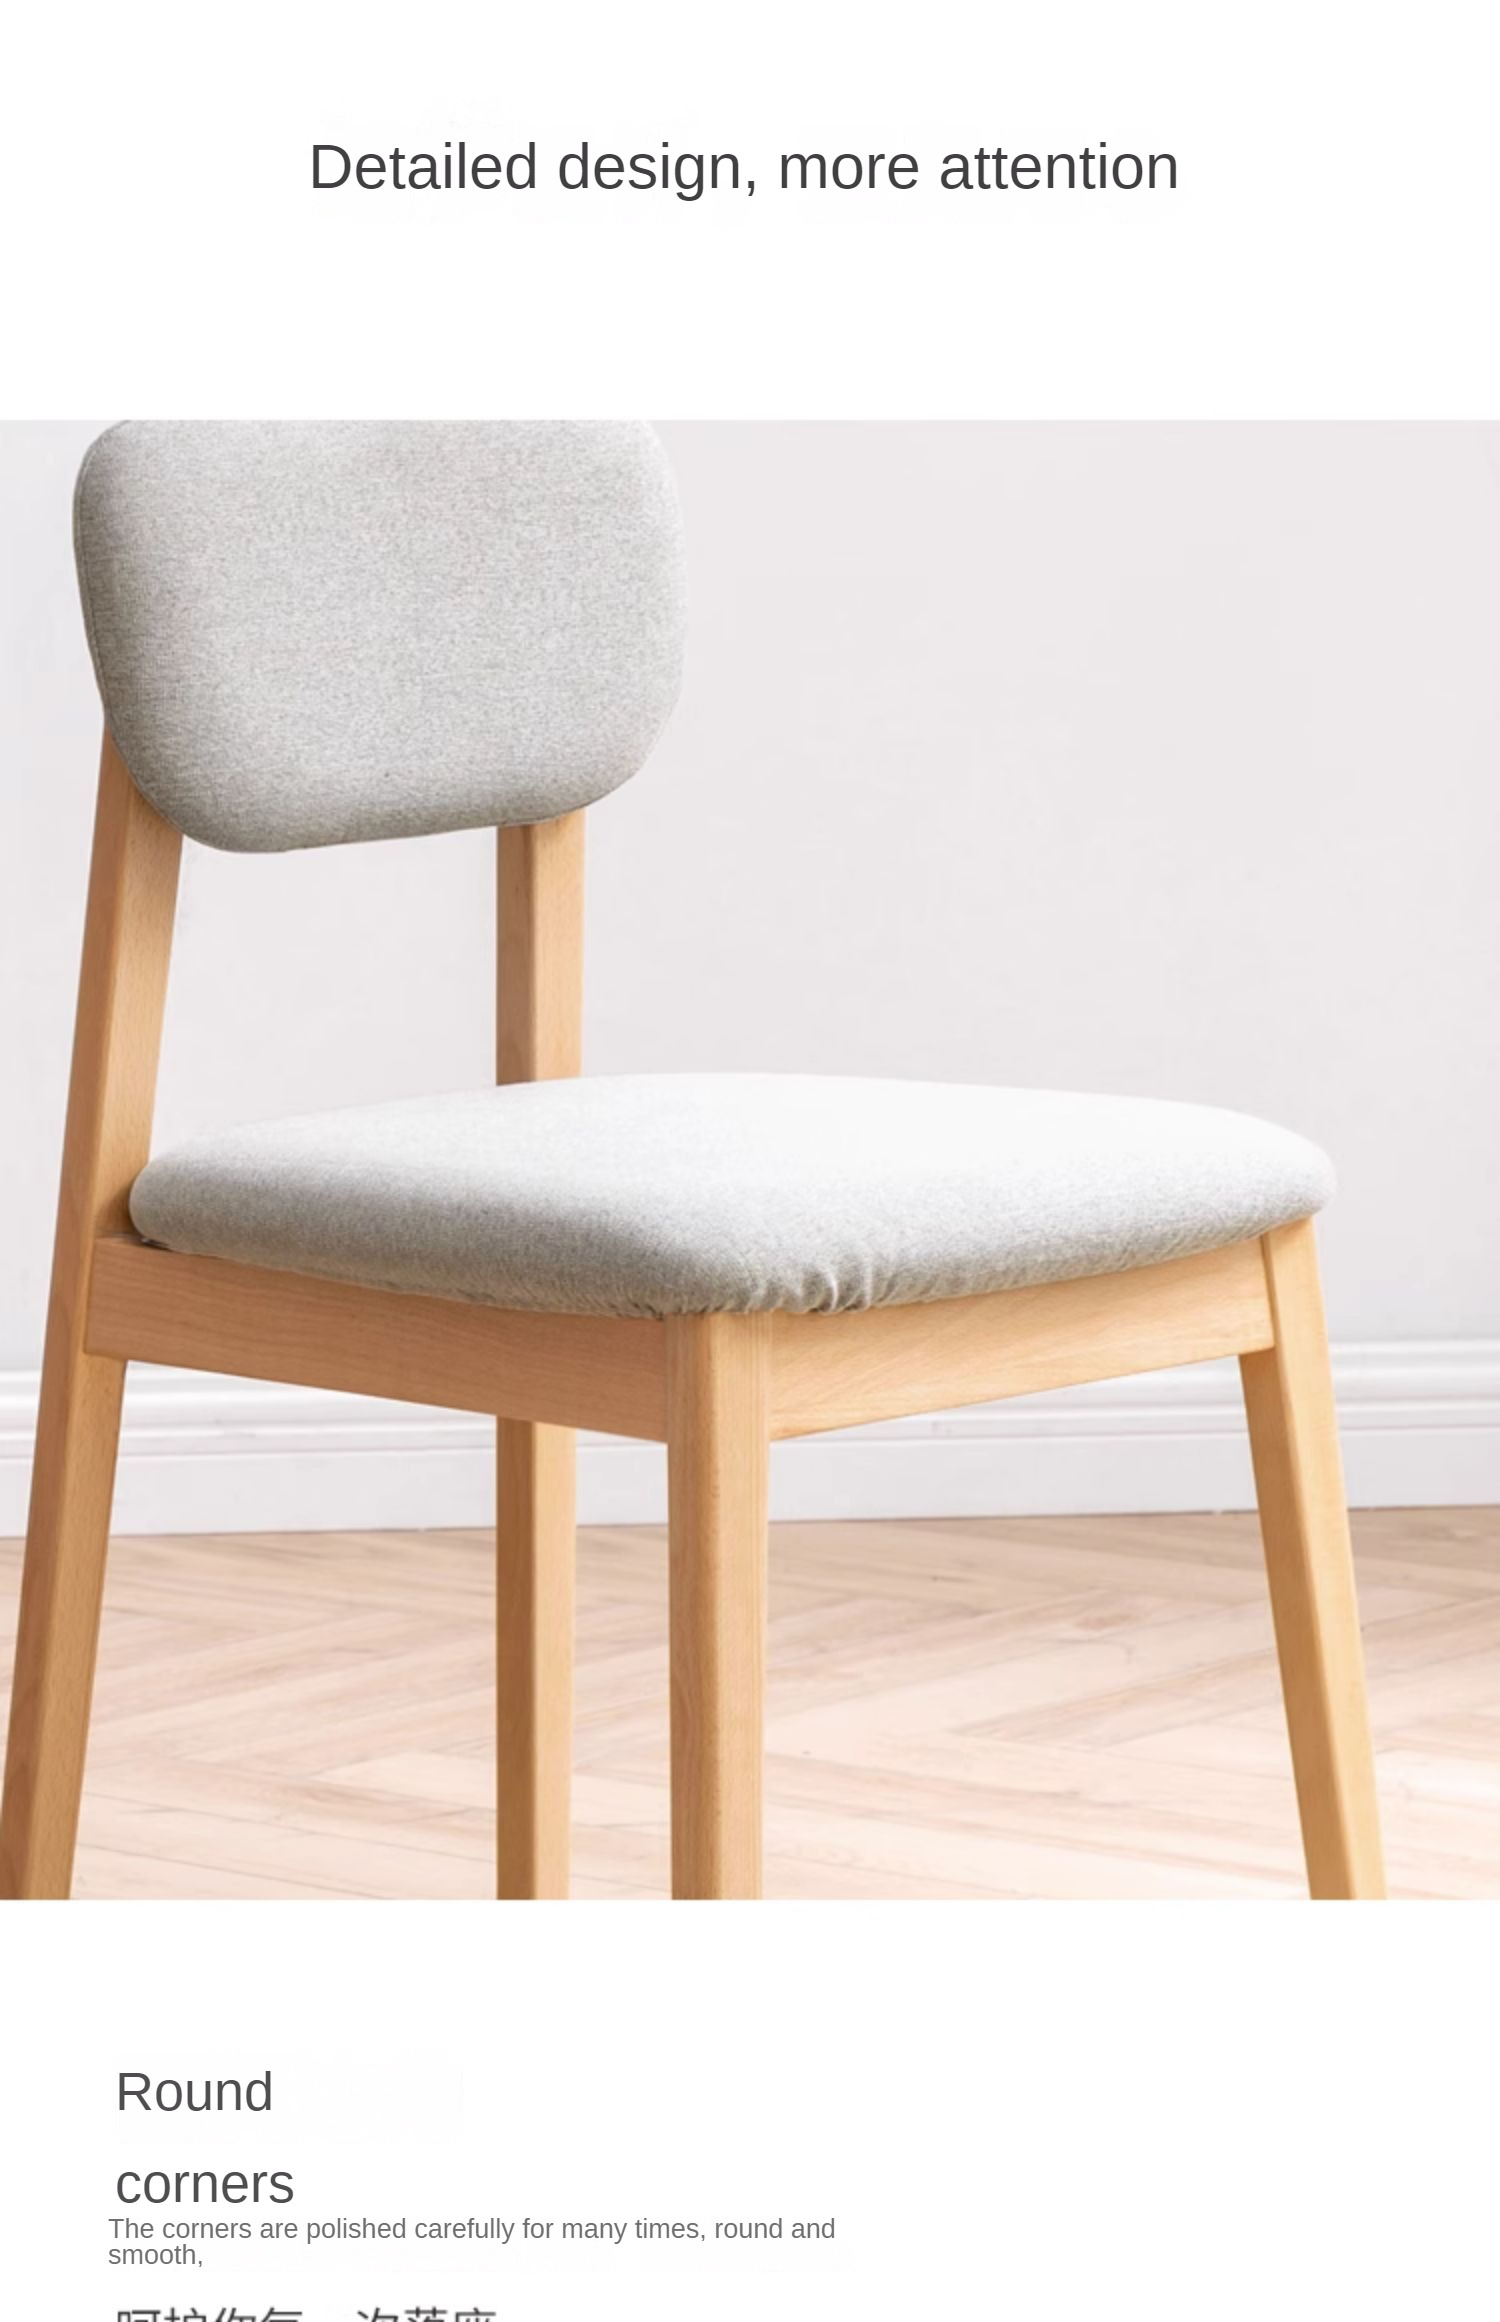 2 pcs Beech solid wood chair modern "